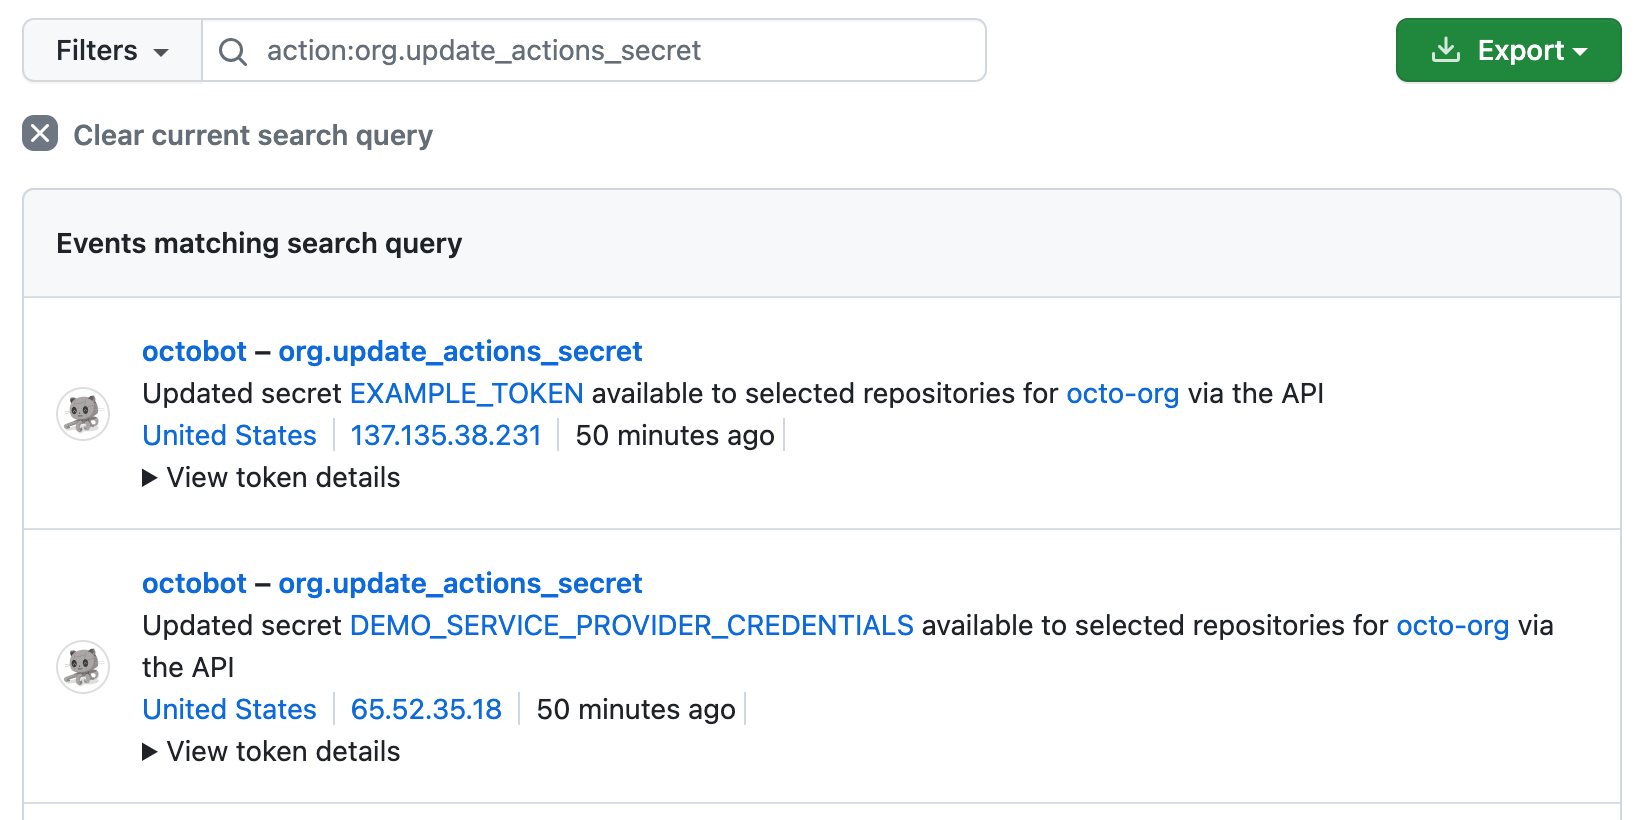 Captura de pantalla que muestra una búsqueda de "action:org.update_actions_secret" en el registro de auditoría de una organización. Se muestran dos resultados.